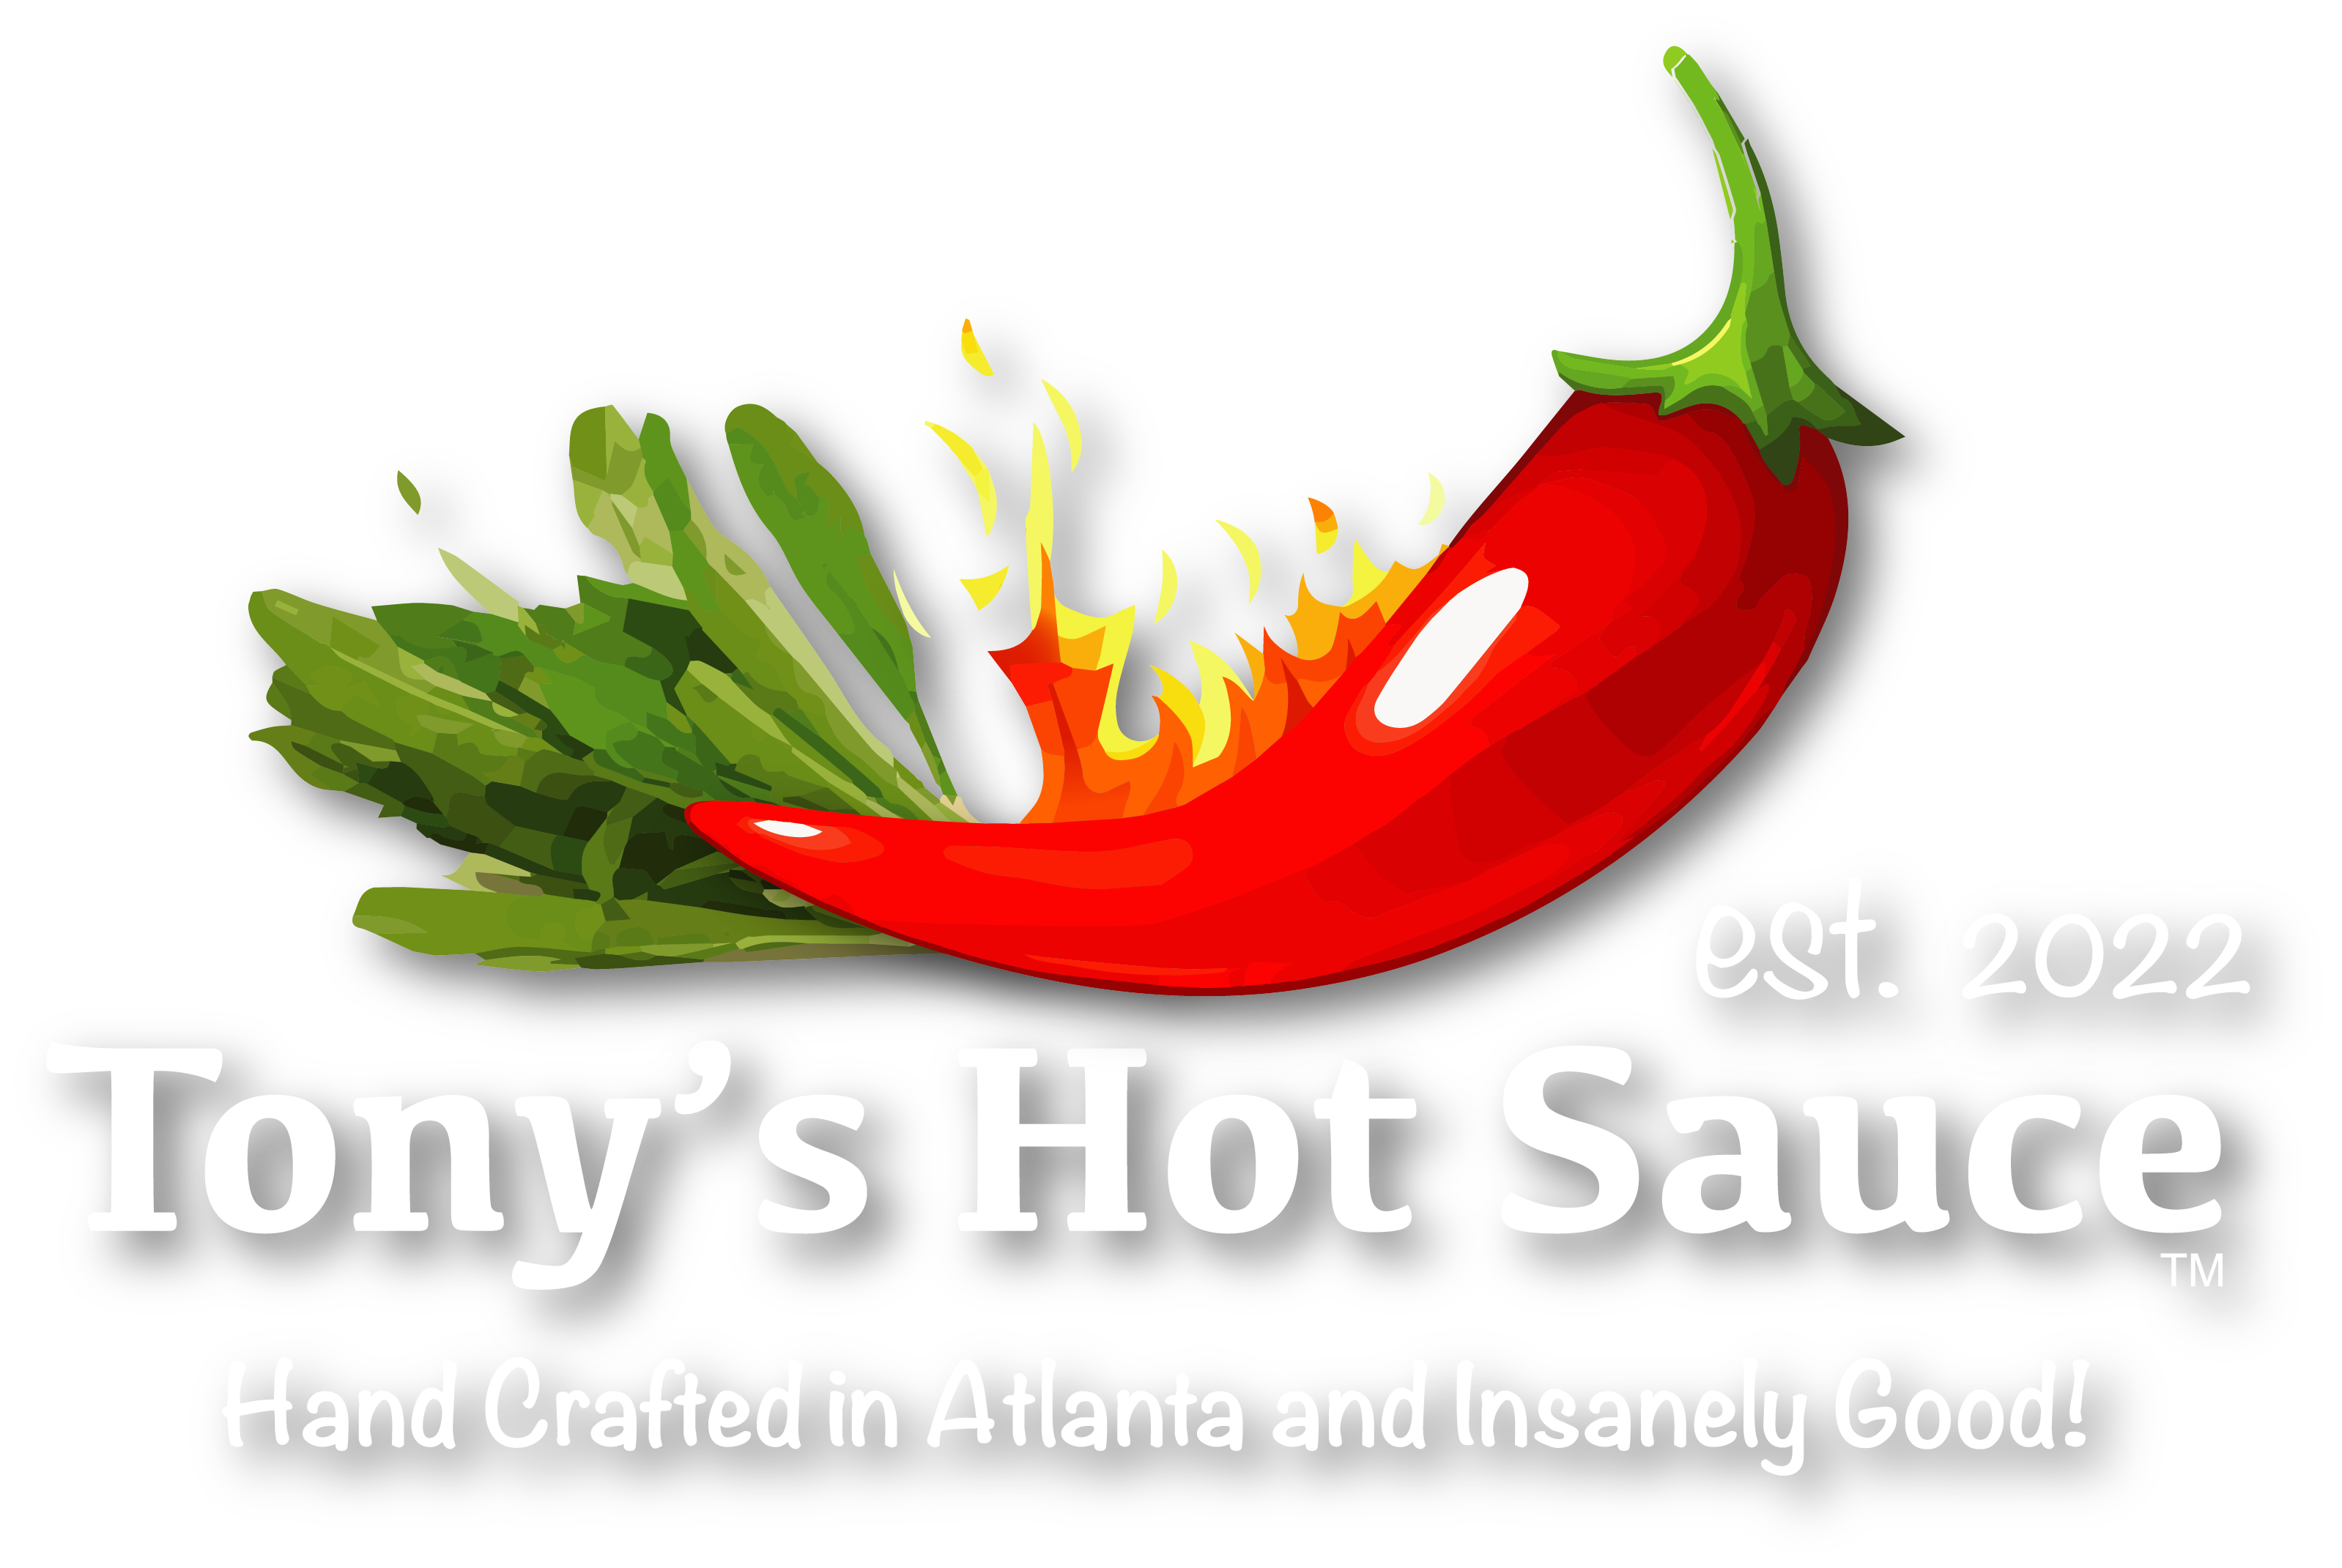 Tony's Hot Sauce Company